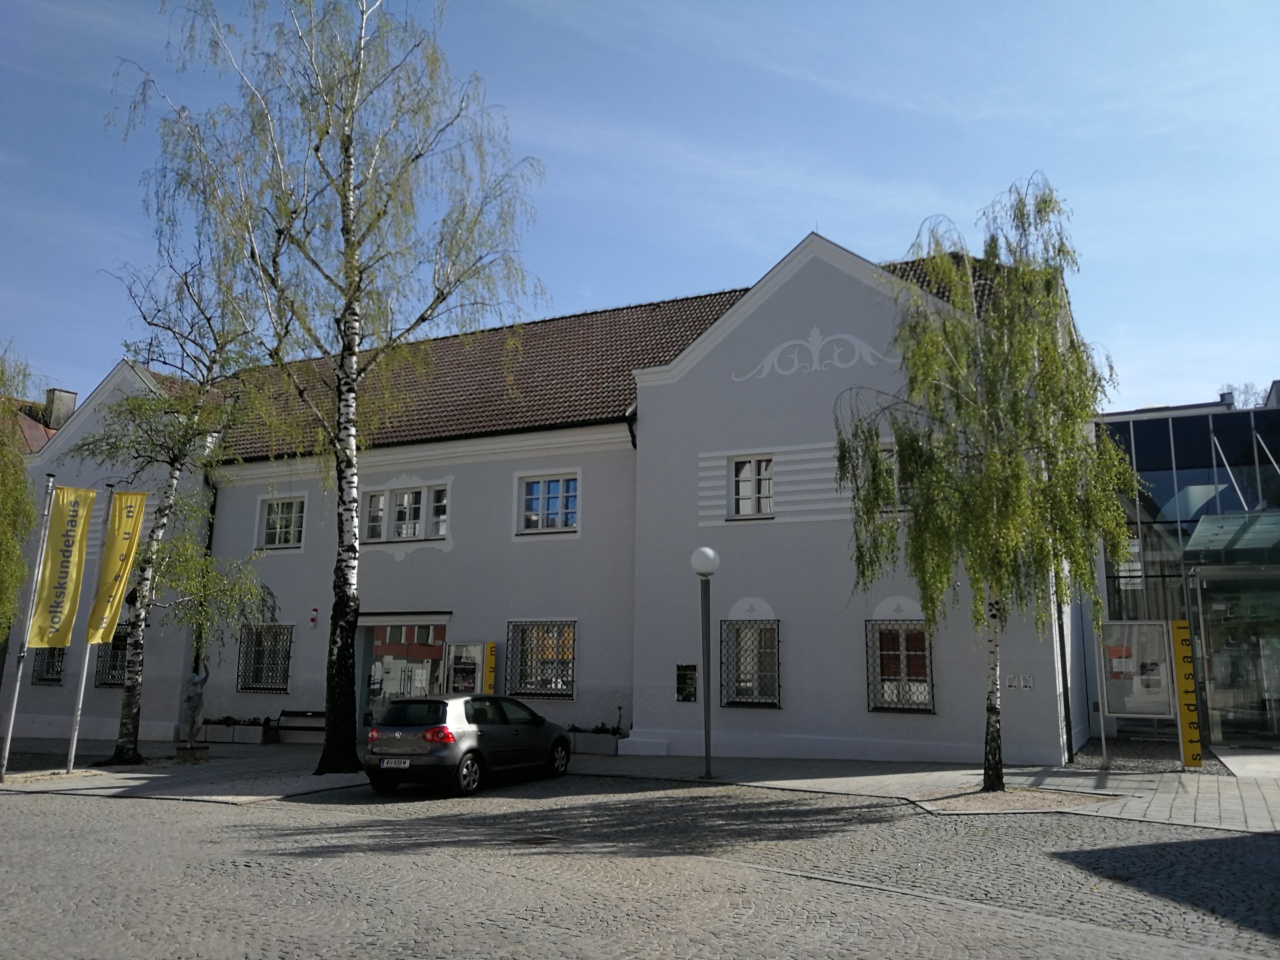  Museum  Volkskundehaus Ried  im  Innkreis  RiS Kommunal 